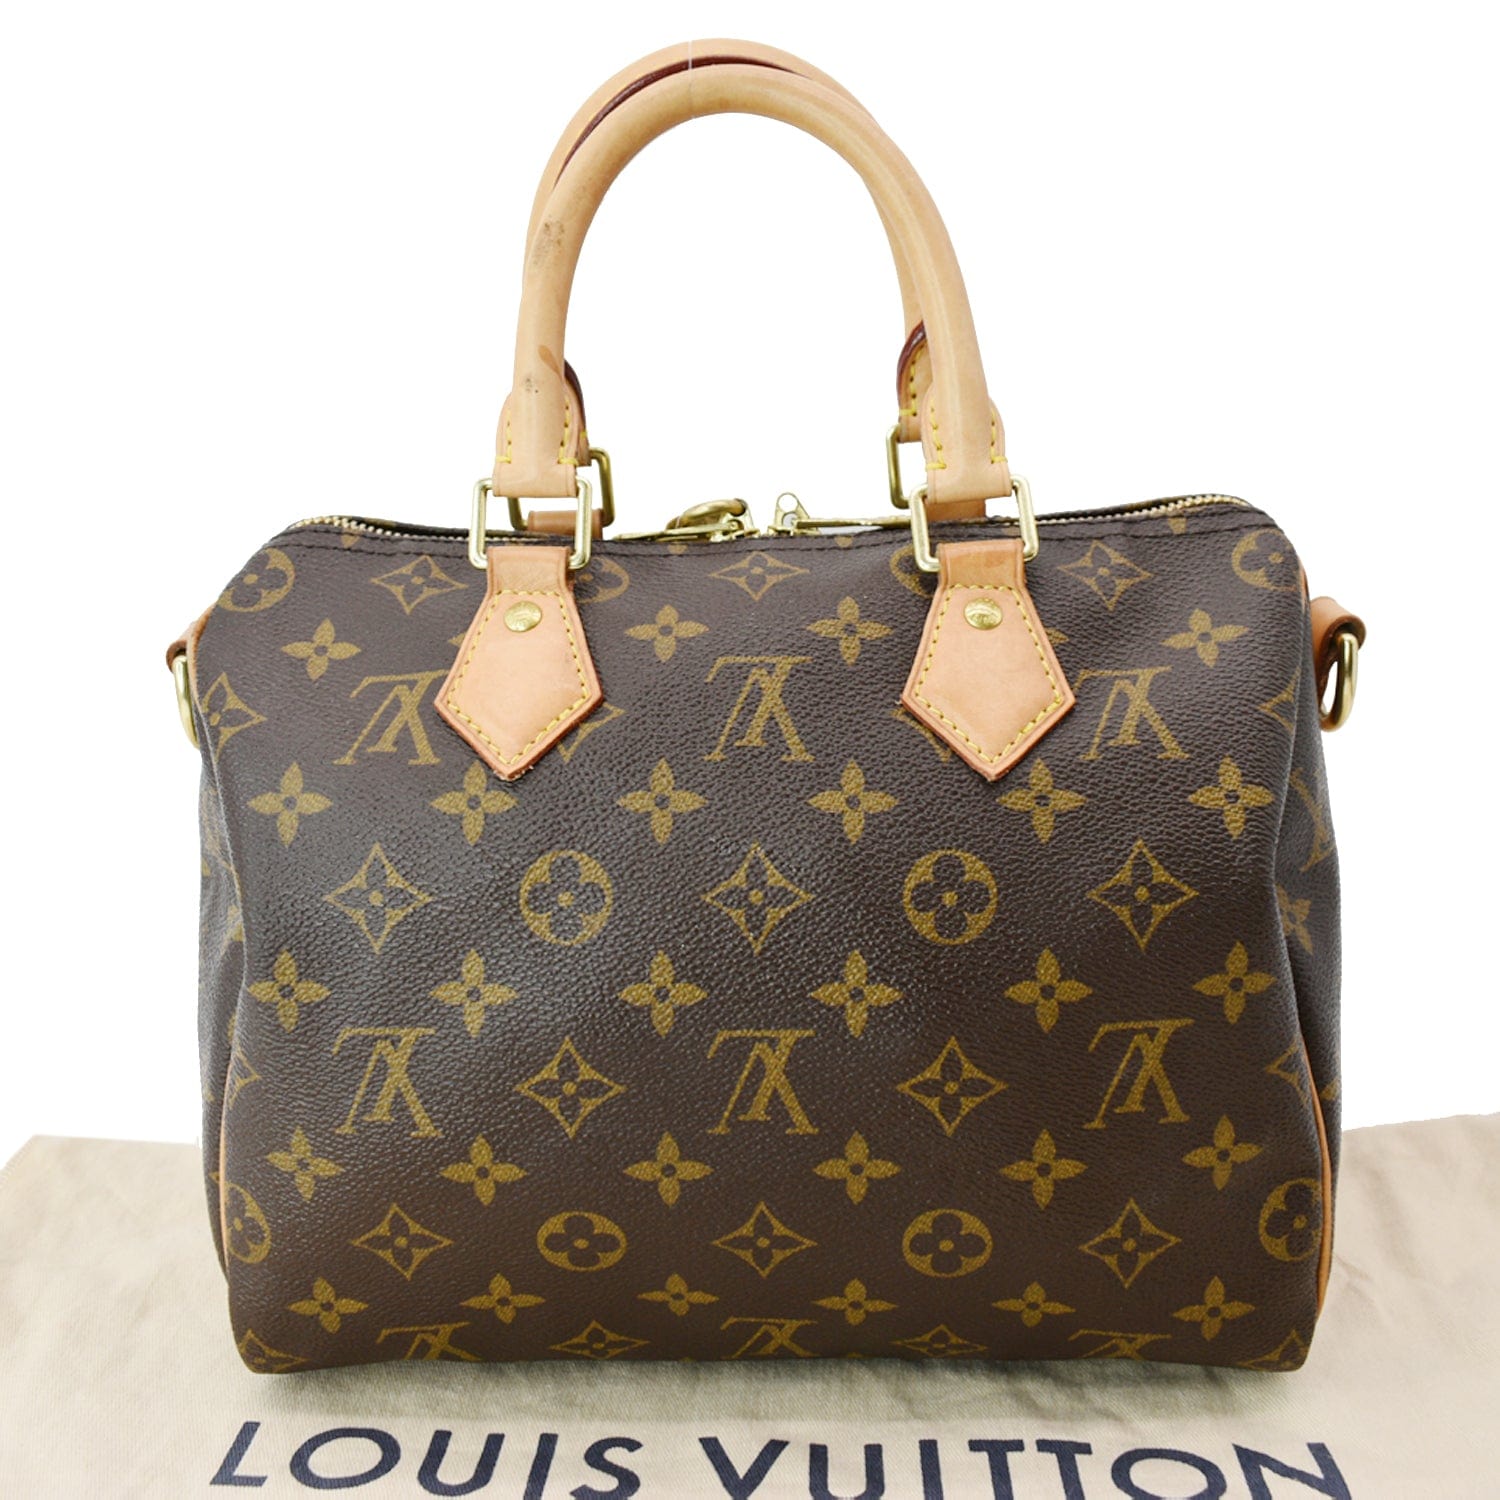 Louis Vuitton Speedy Bandouliere Size 25 Brown/Beige/Red M55422 Monogram / Teddy